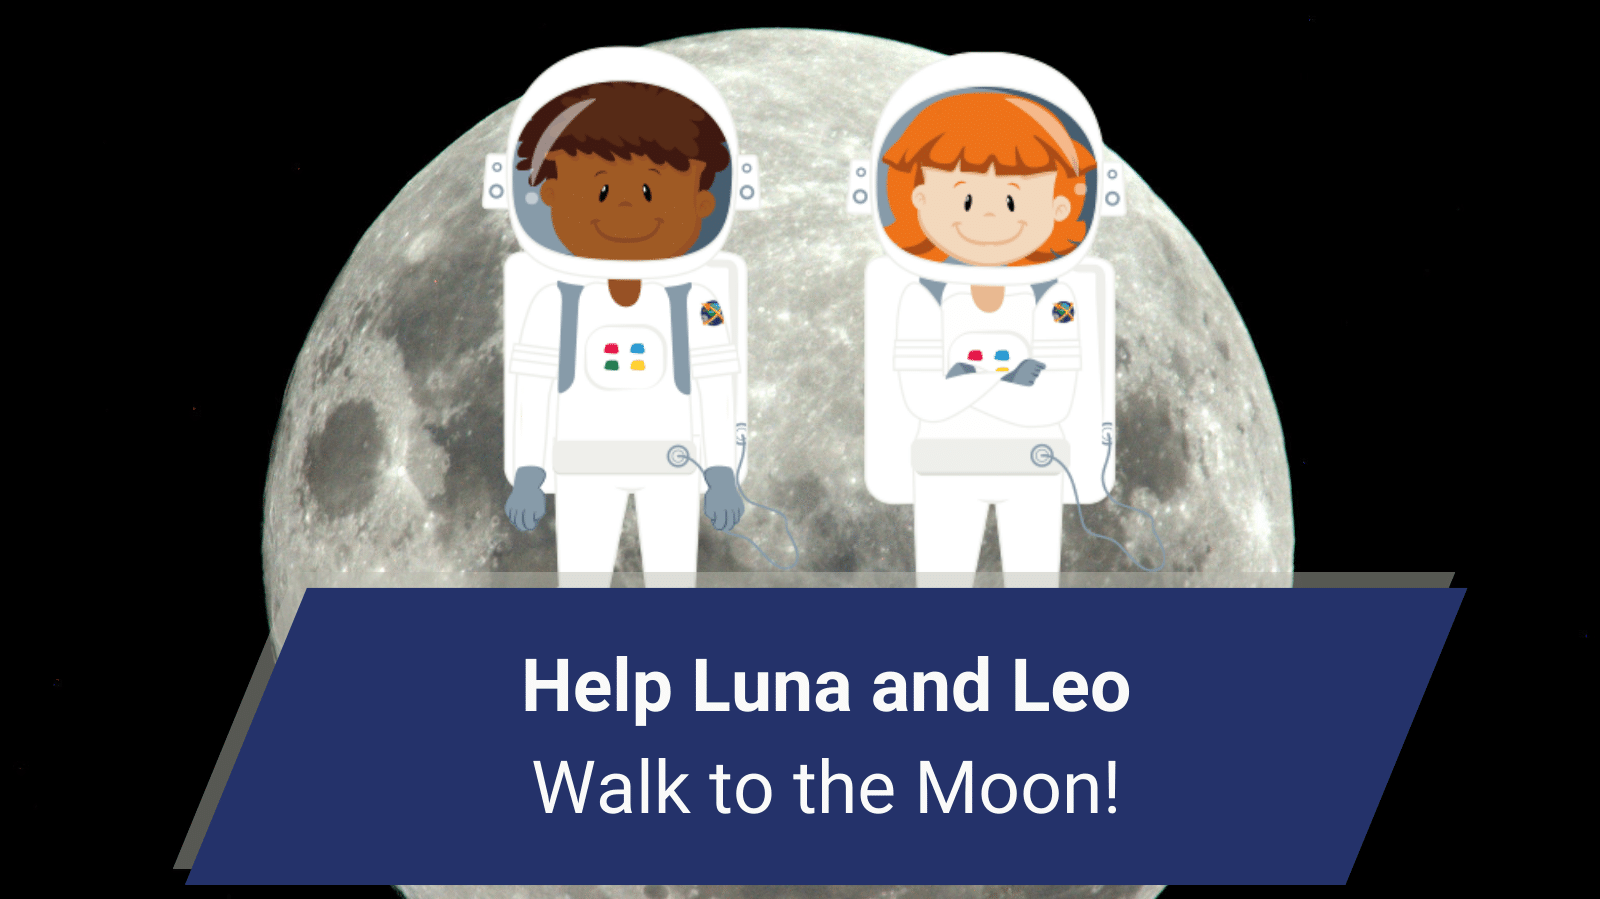 ¡Ayuda a Luna y Leo a caminar hacia la Luna!